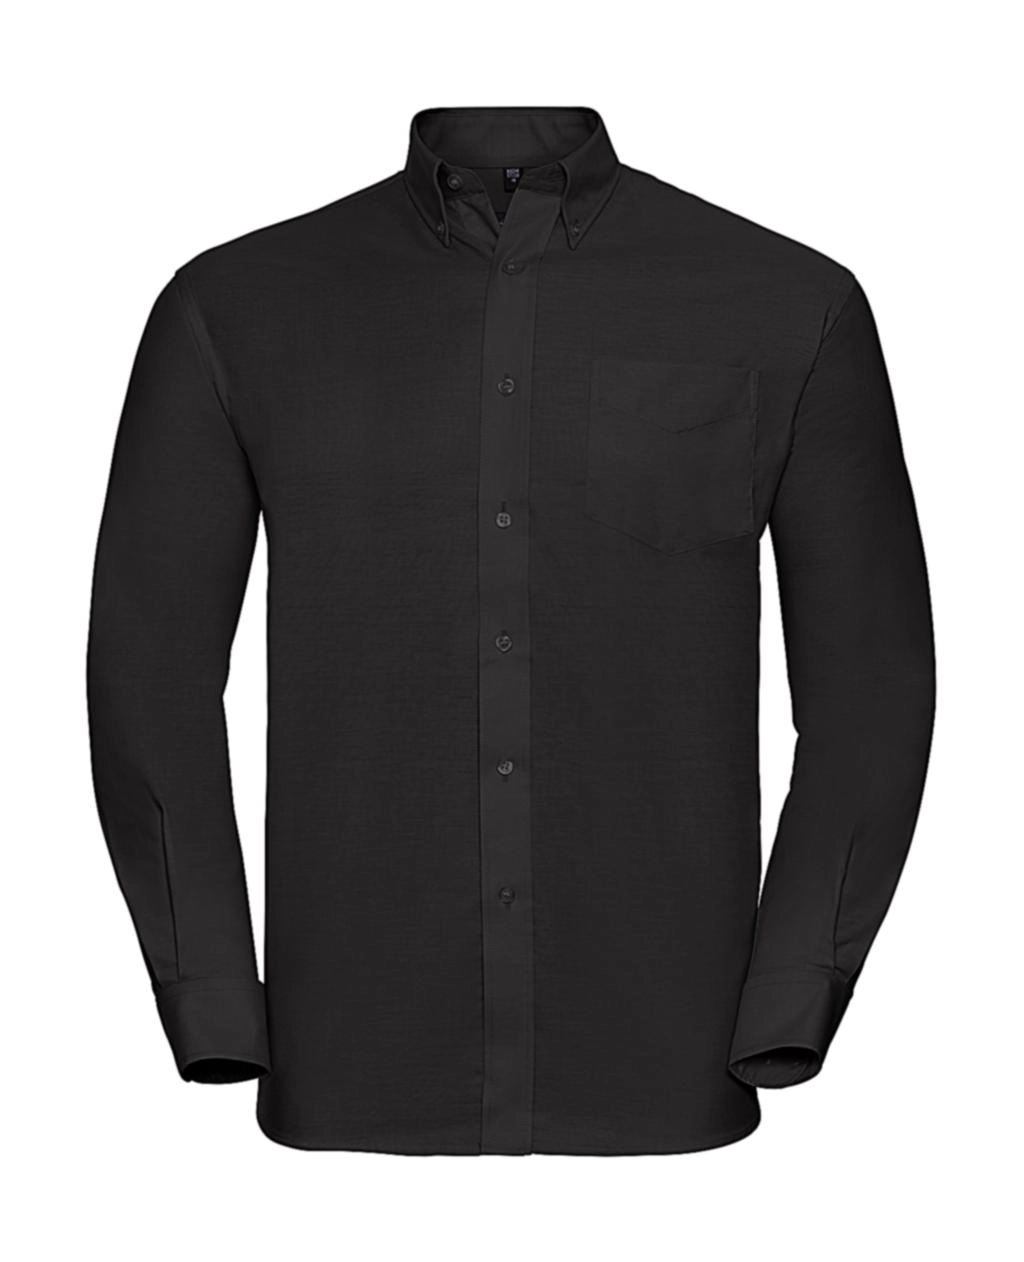 Oxford Shirt LS zum Besticken und Bedrucken in der Farbe Black mit Ihren Logo, Schriftzug oder Motiv.